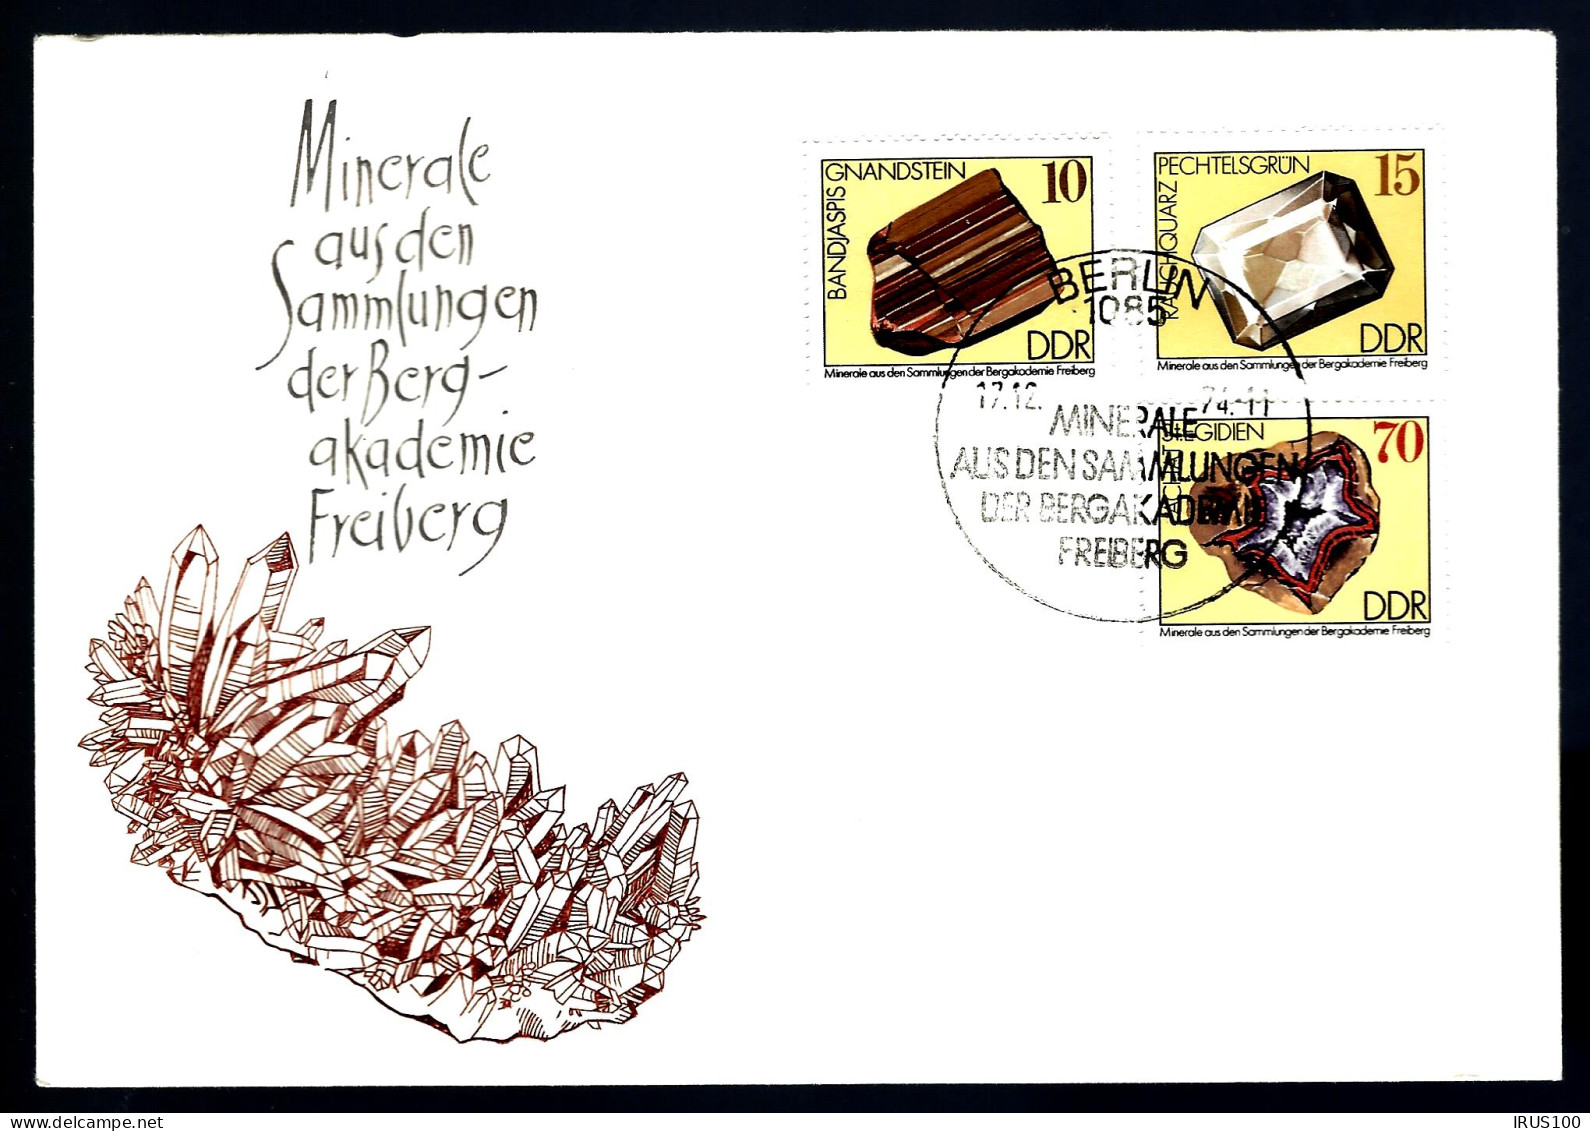 MINÉRAUX - COLLECTION DE LA BERG-AKADEMIE - FRIBOURG - 2 ENVELOPPES - Minerali